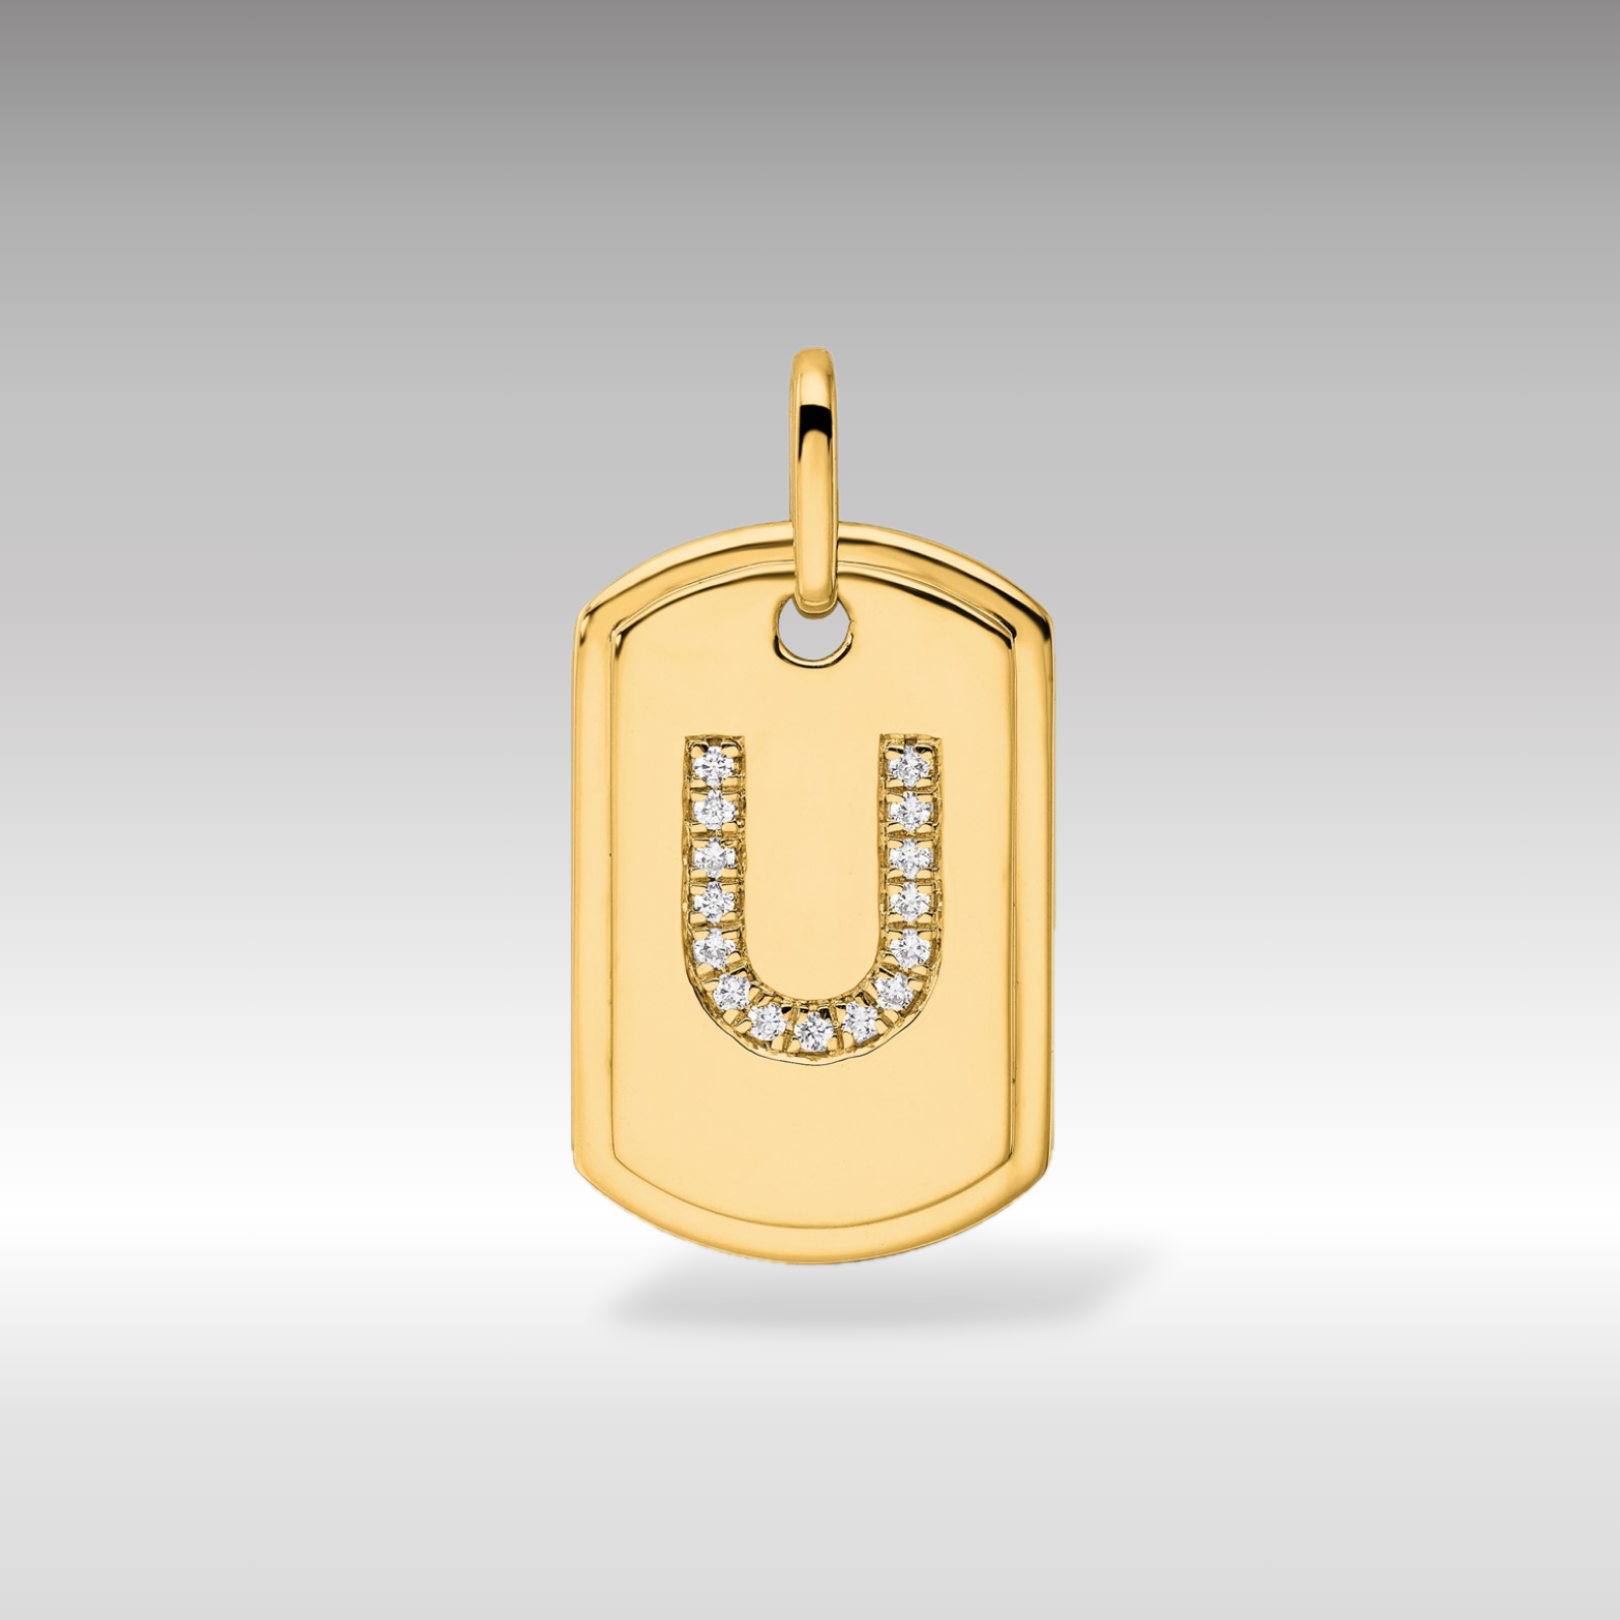 14K Gold Initial "U" Dog Tag With Genuine Diamonds - Charlie & Co. Jewelry